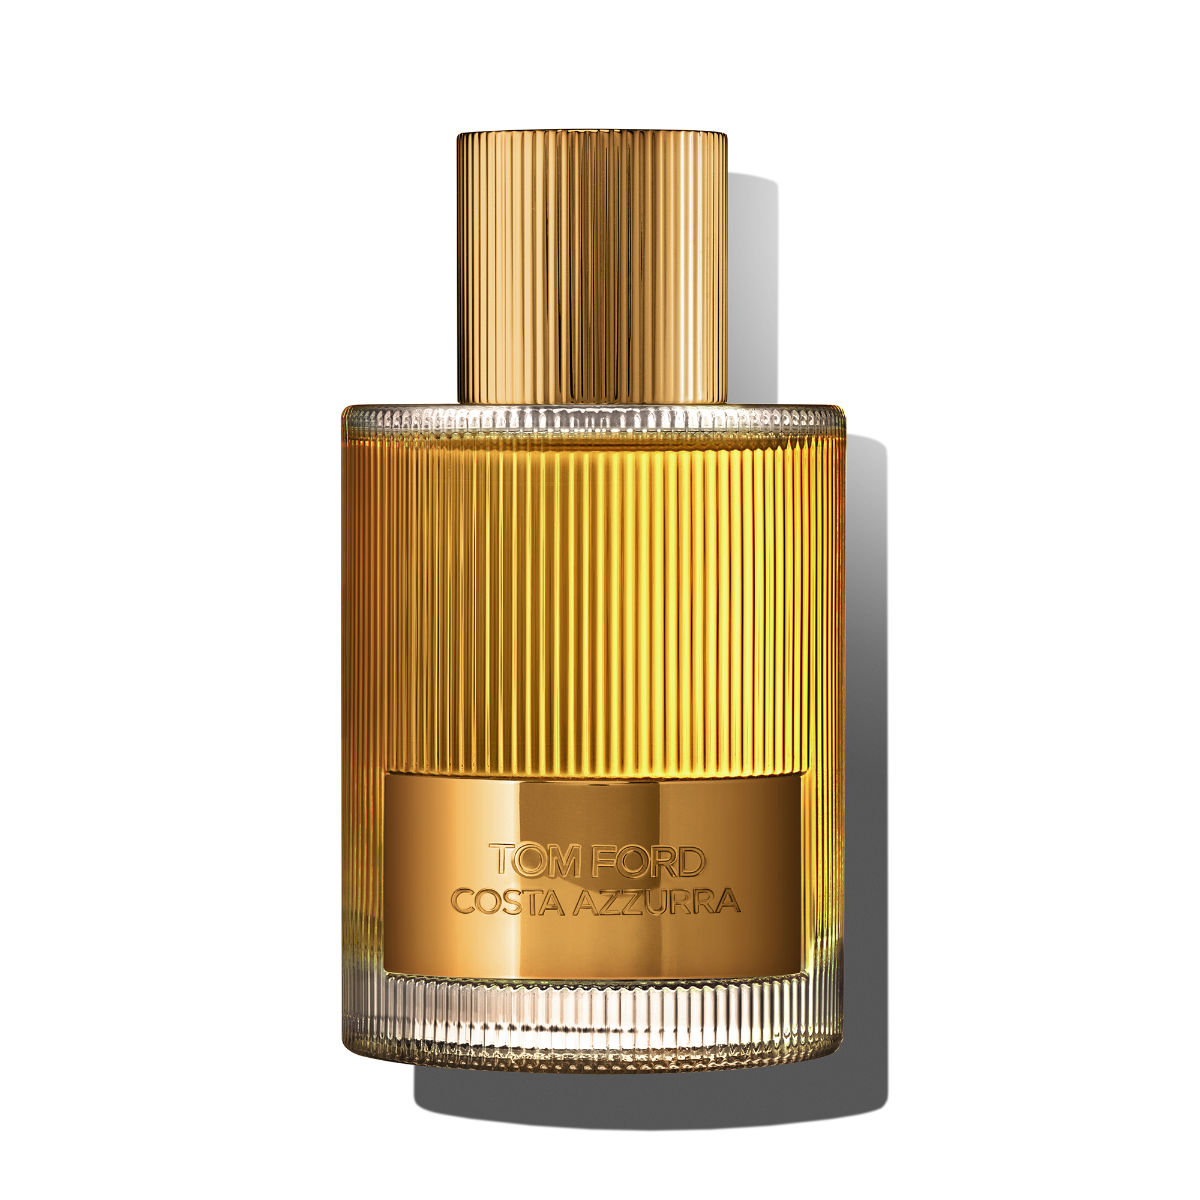 Tom Ford Presents The Debut Of A New Signature Eau De Parfum, Costa Azzurra